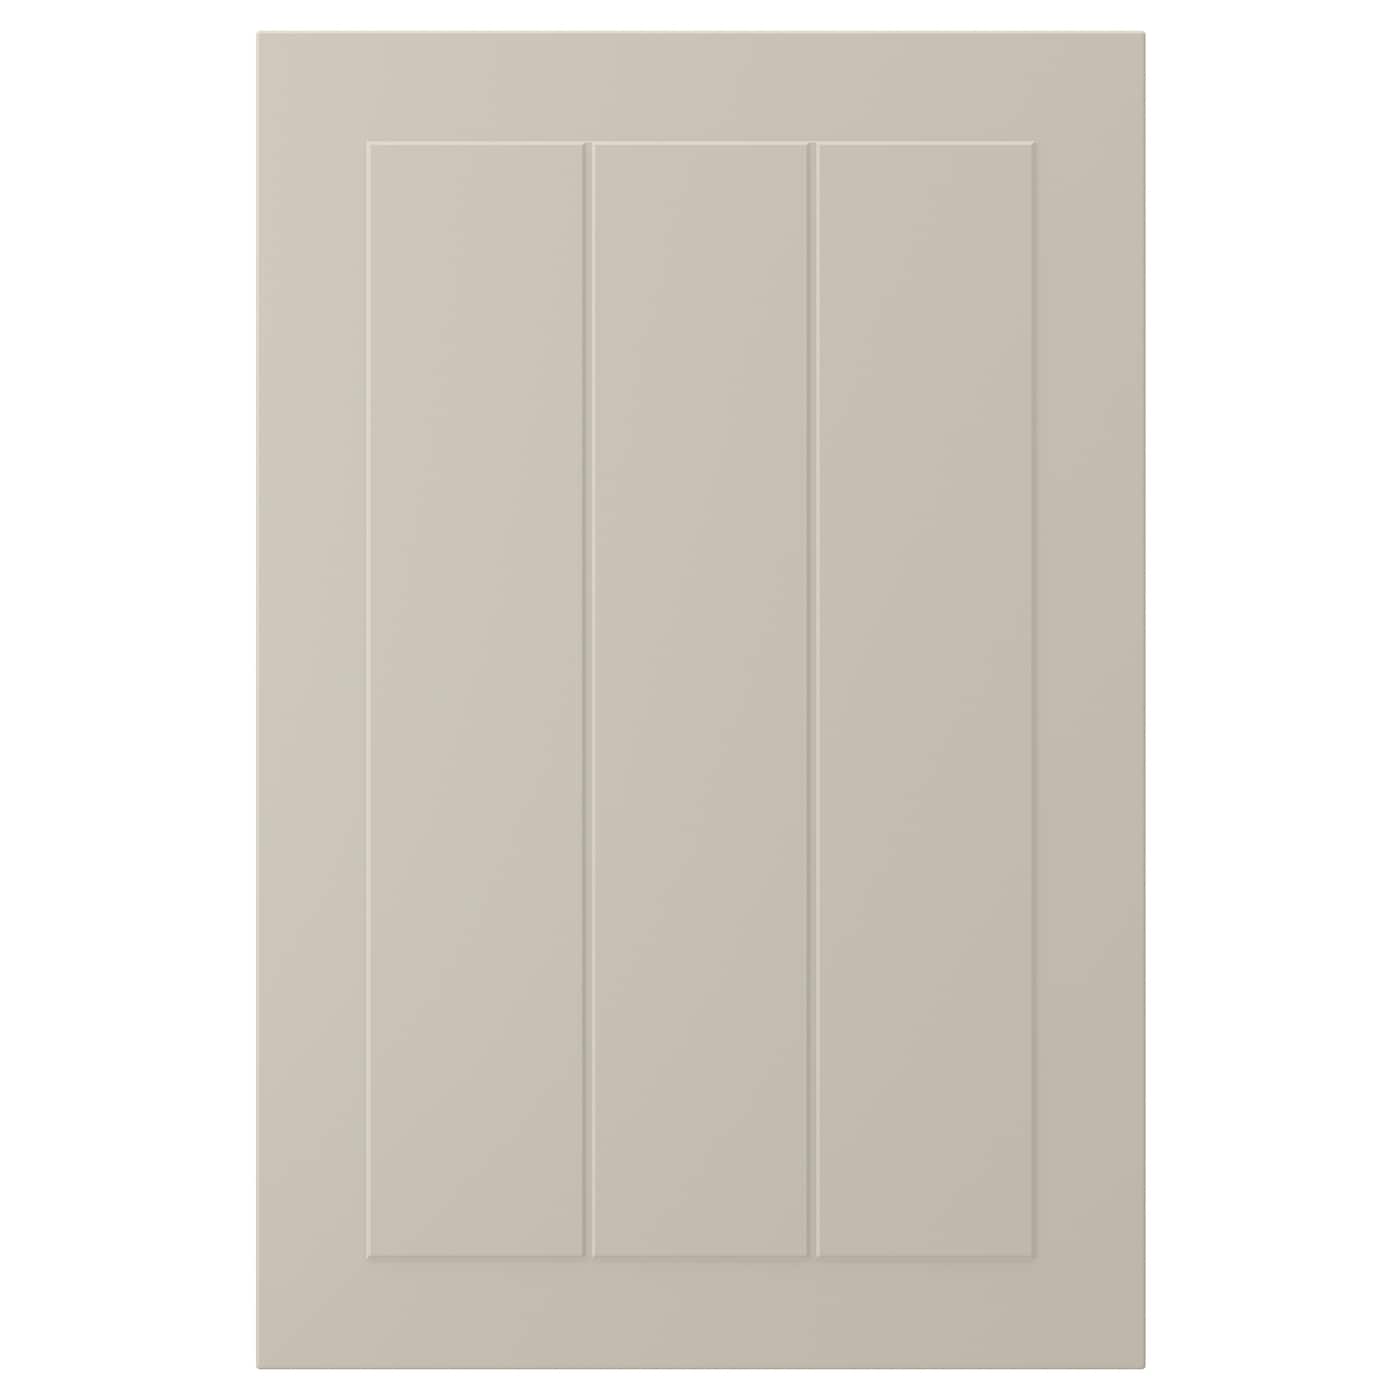 Дверца - IKEA STENSUND, 60х40 см, бежевый, СТЕНСУНД ИКЕА